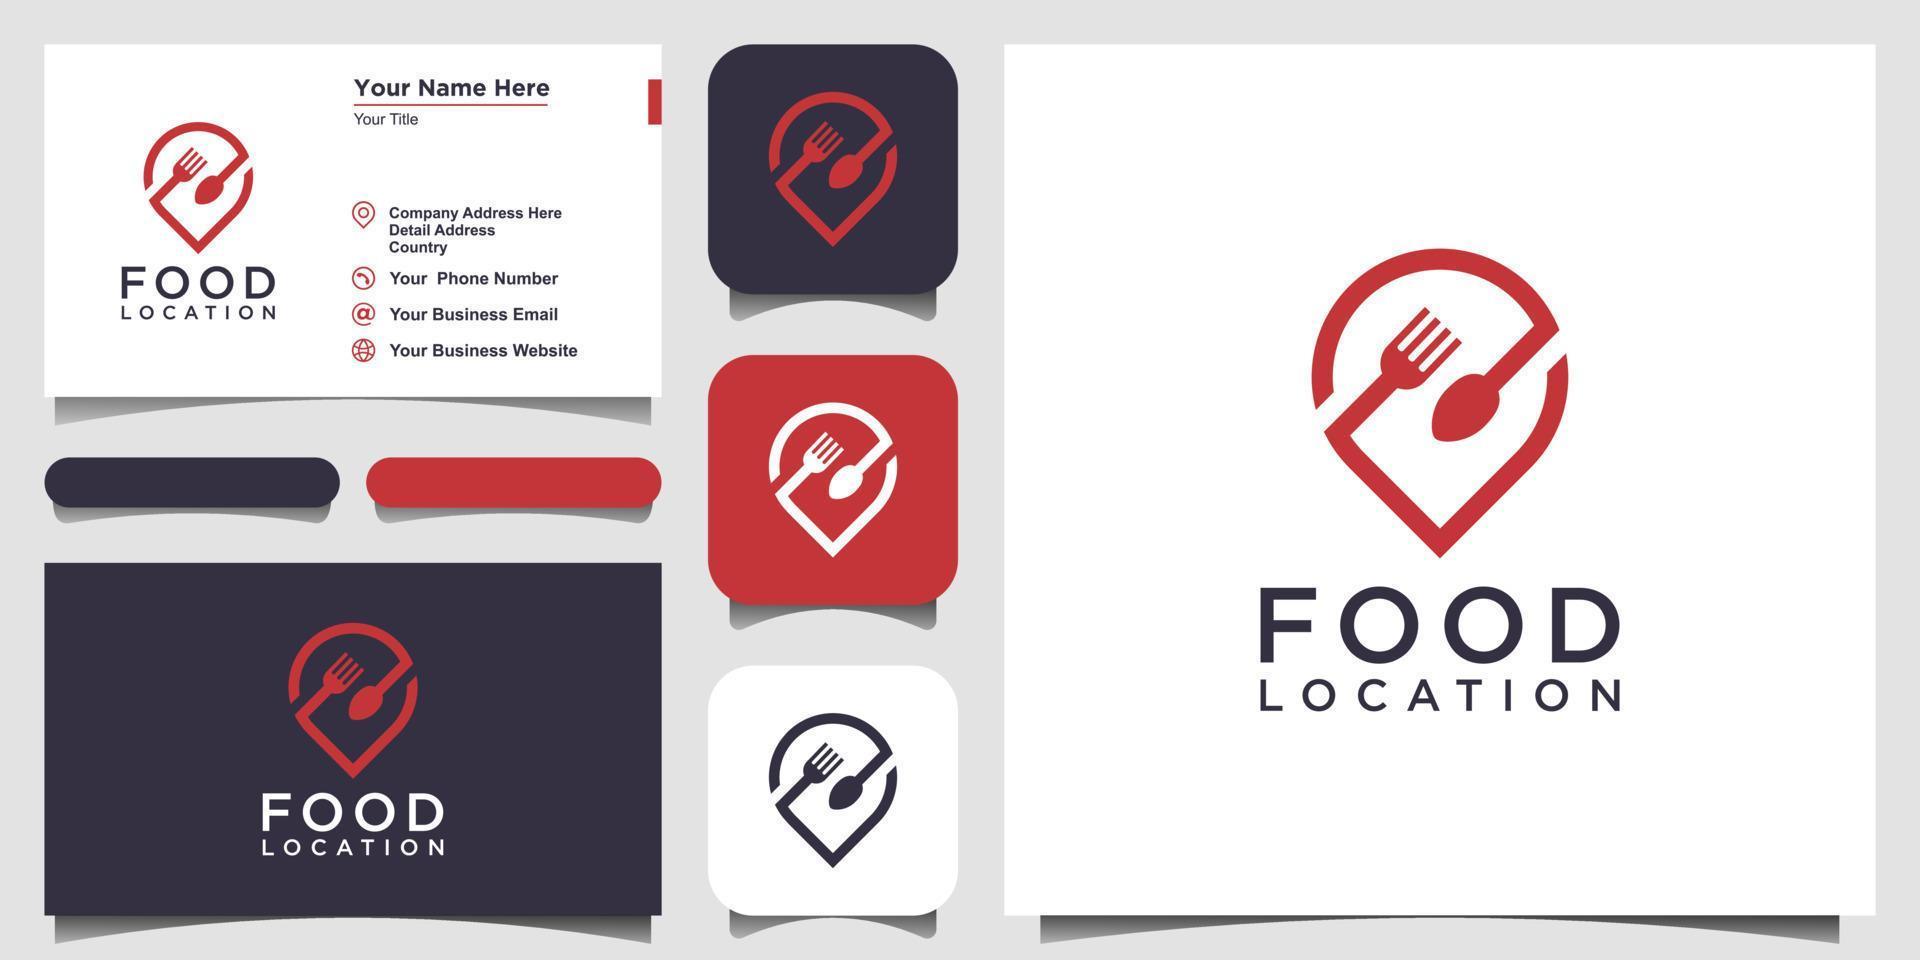 diseño del logotipo de la ubicación de la comida, con el concepto de un icono de alfiler combinado con un tenedor y una cuchara. diseño de tarjeta de visita vector